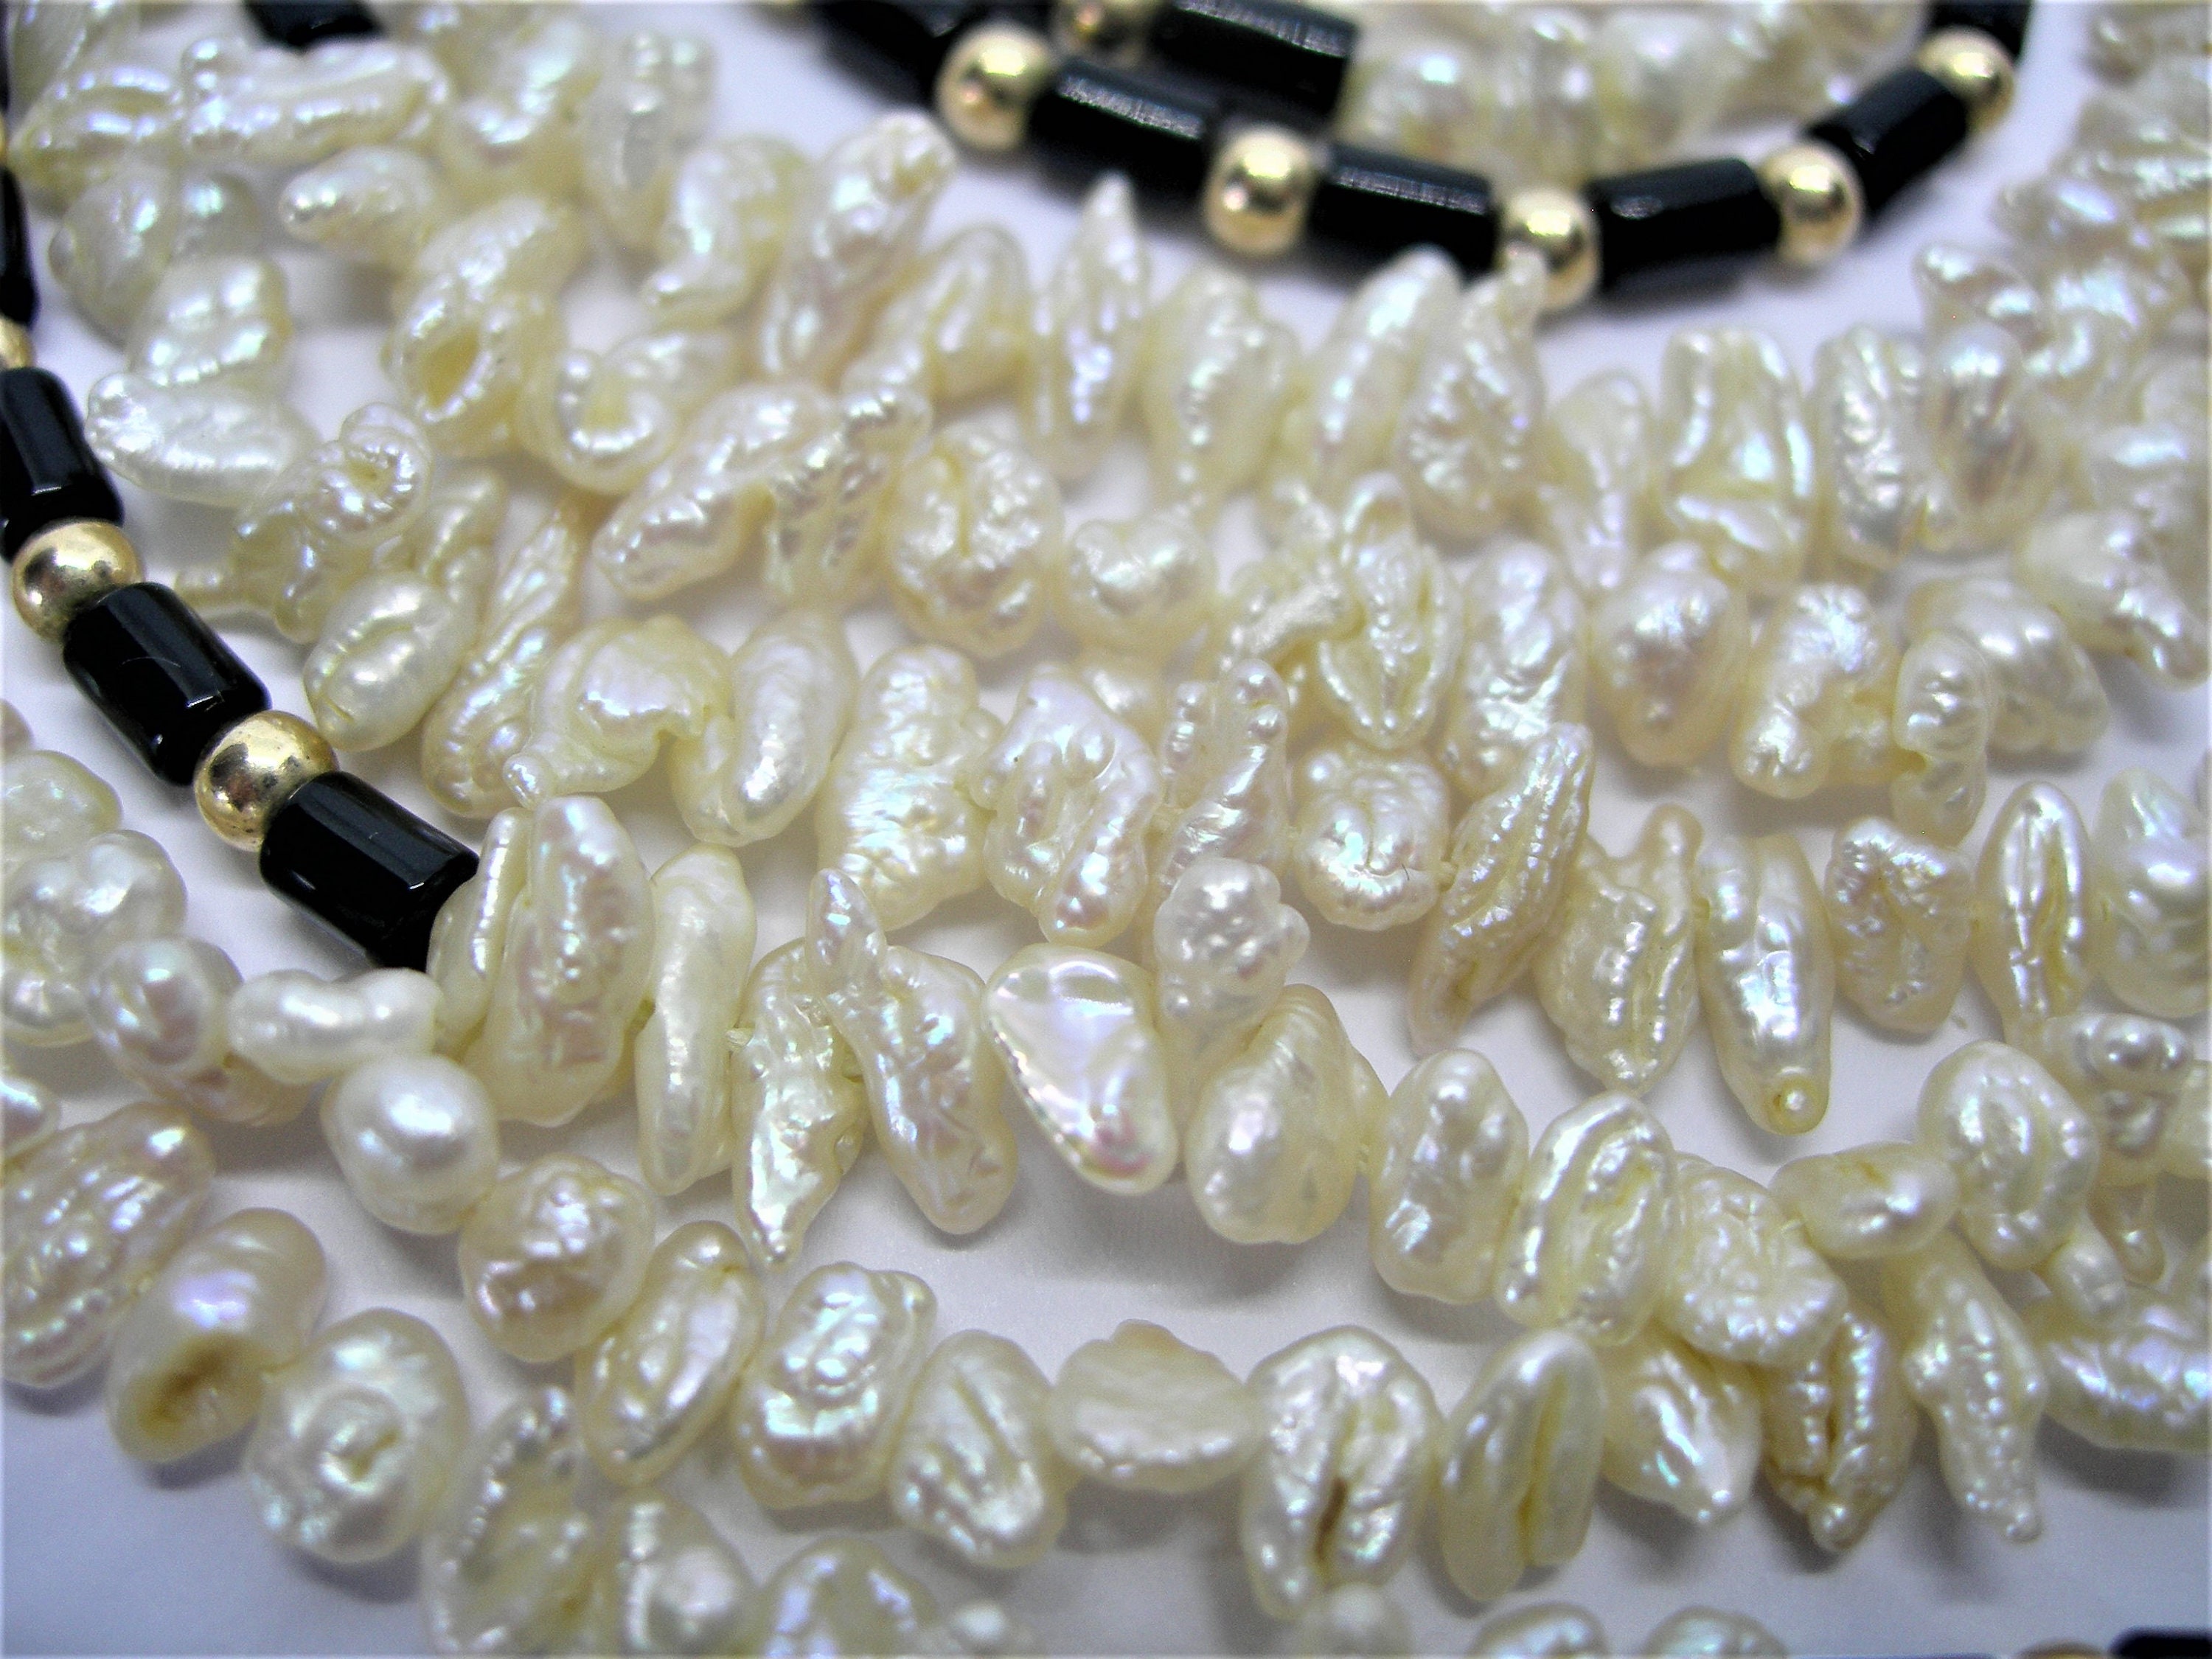 Extra Large Genuine Freshwater Pearls Necklace White and Black - Etsy UK